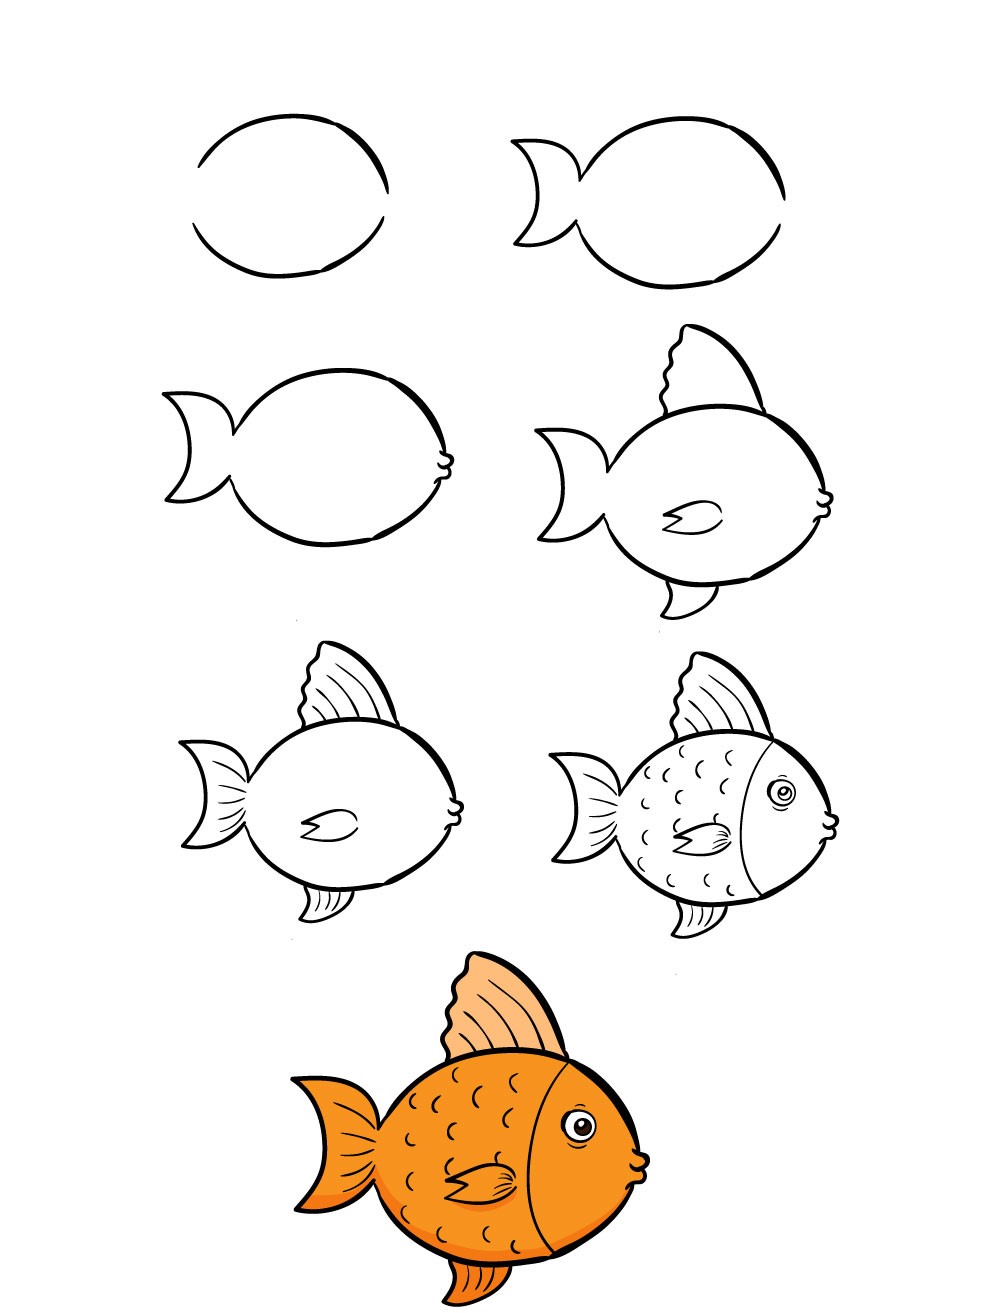 Hướng dẫn cách vẽ cá vàng đơn giản với 6 bước cơ bản